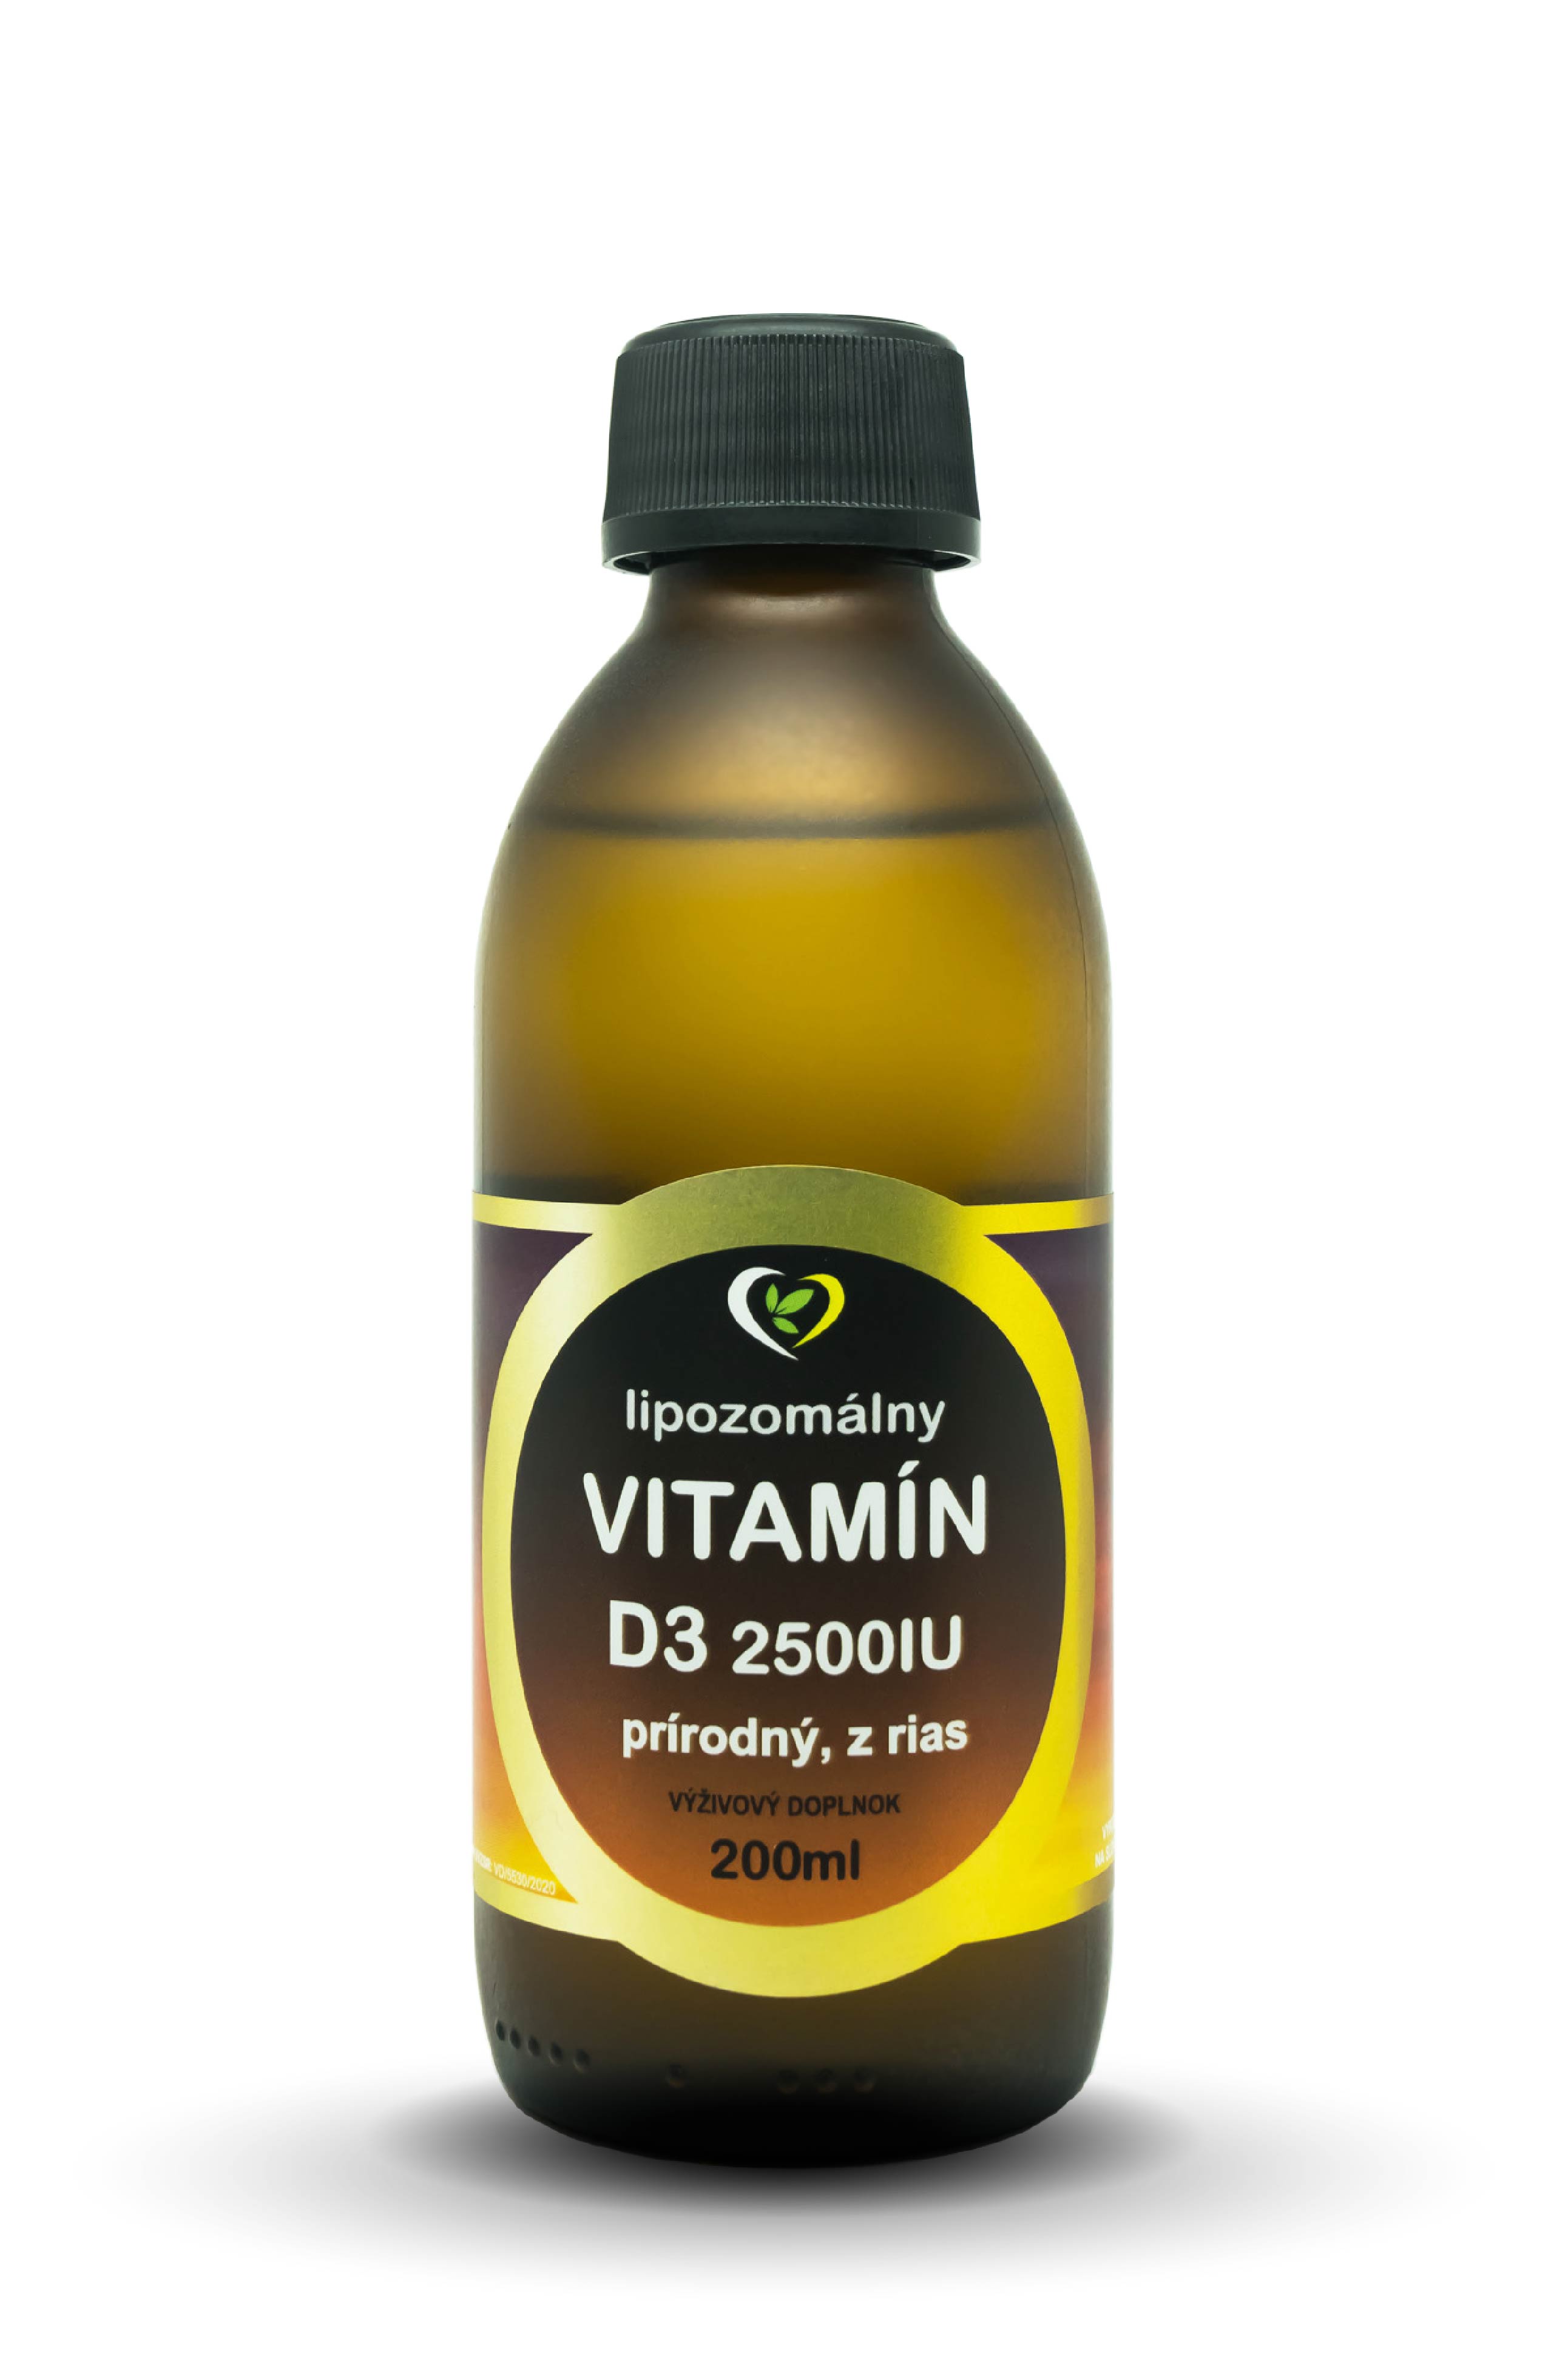 Lipozomálny prírodný vitamín D3 rastlinného pôvodu z rias 2500IU, to je sila vitamínu z čistej prírody s mimoriadnou vstrebabateľnosťou a...